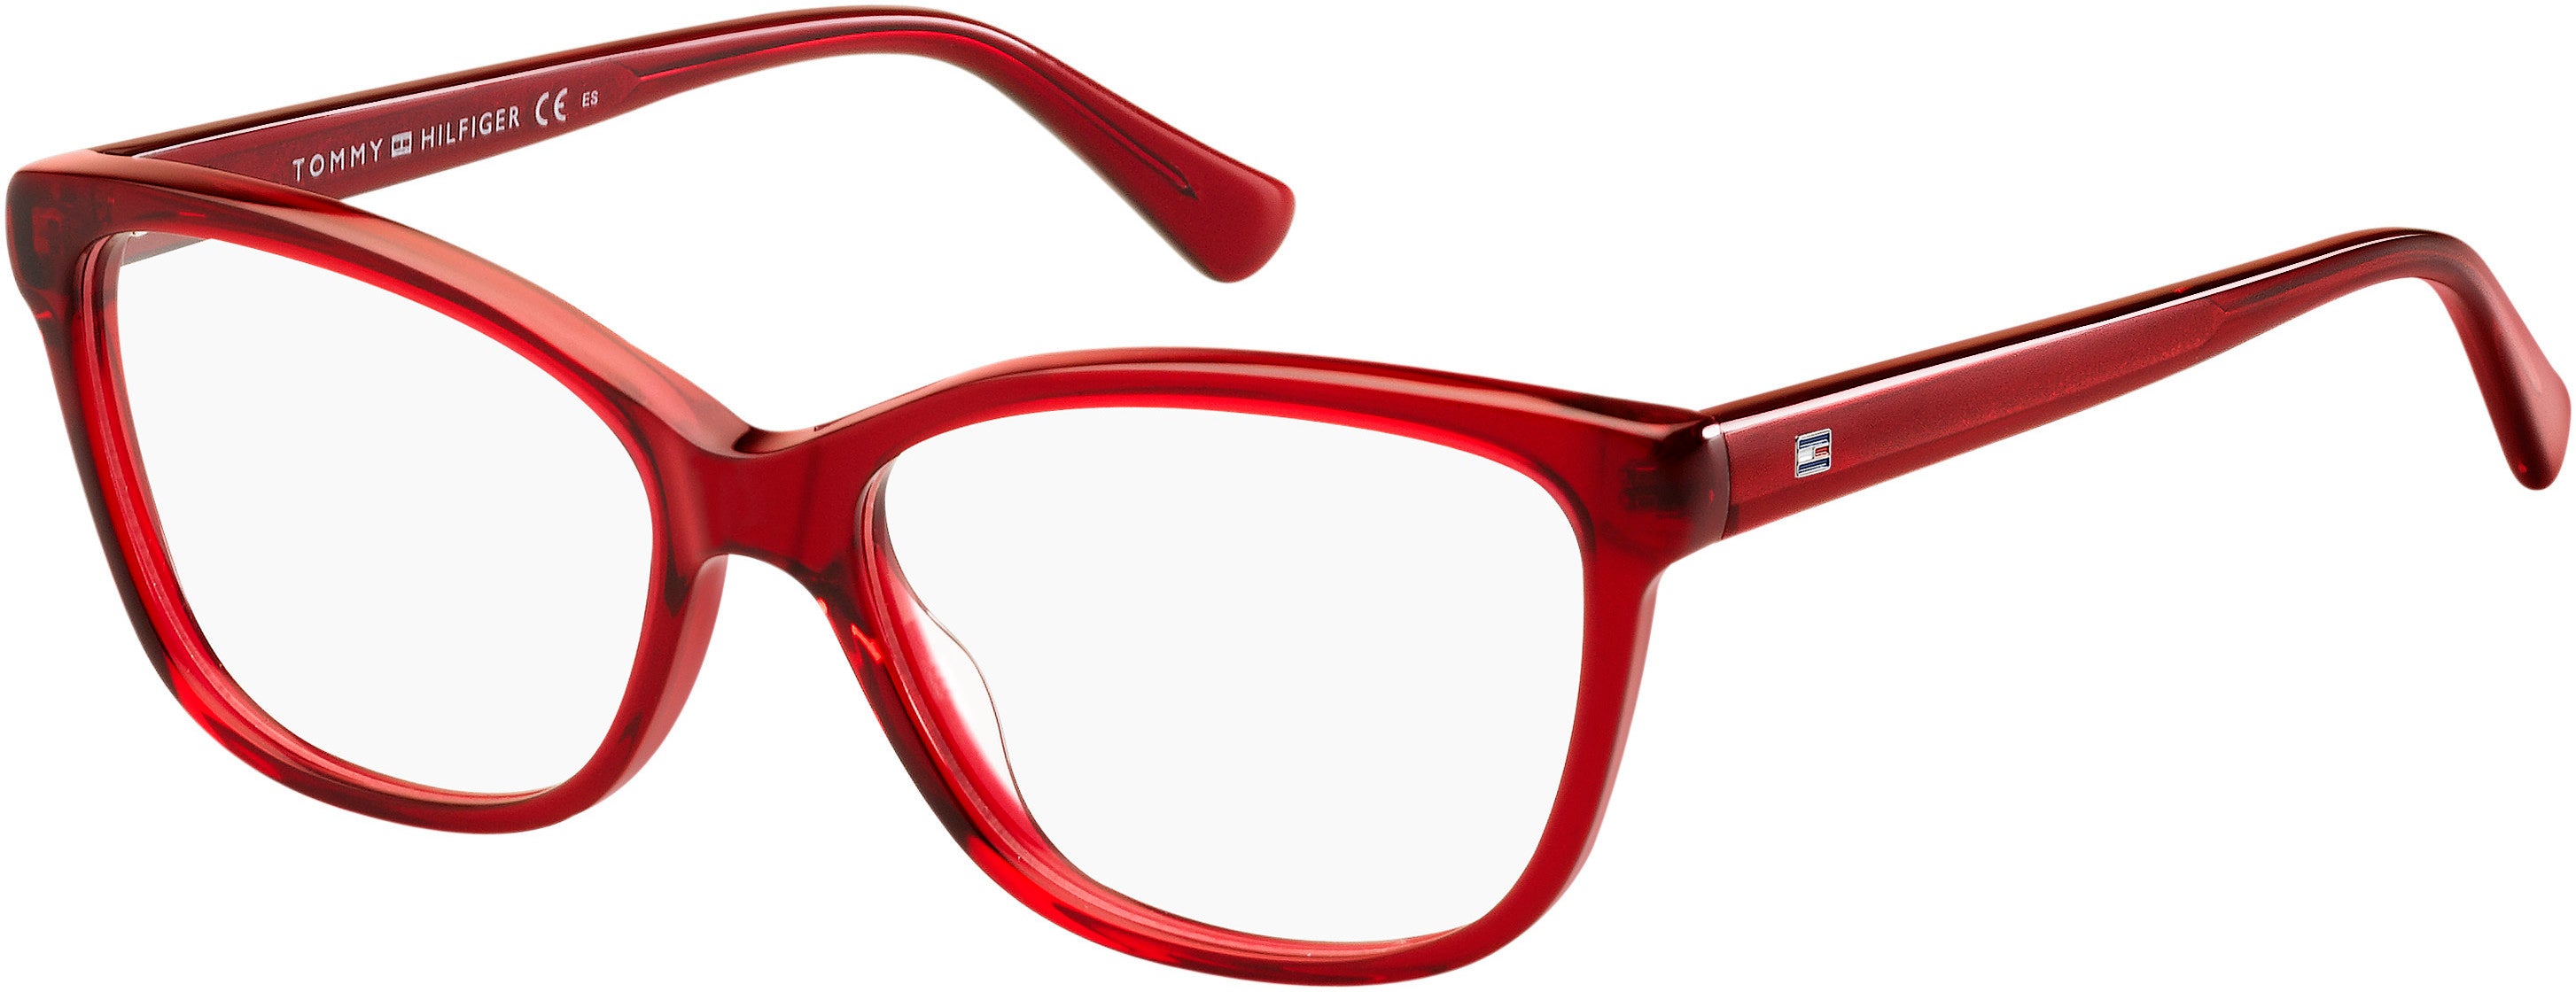 Tommy Hilfiger T. Hilfiger 1531 Rectangular Eyeglasses 0C9A-0C9A  Red (00 Demo Lens)